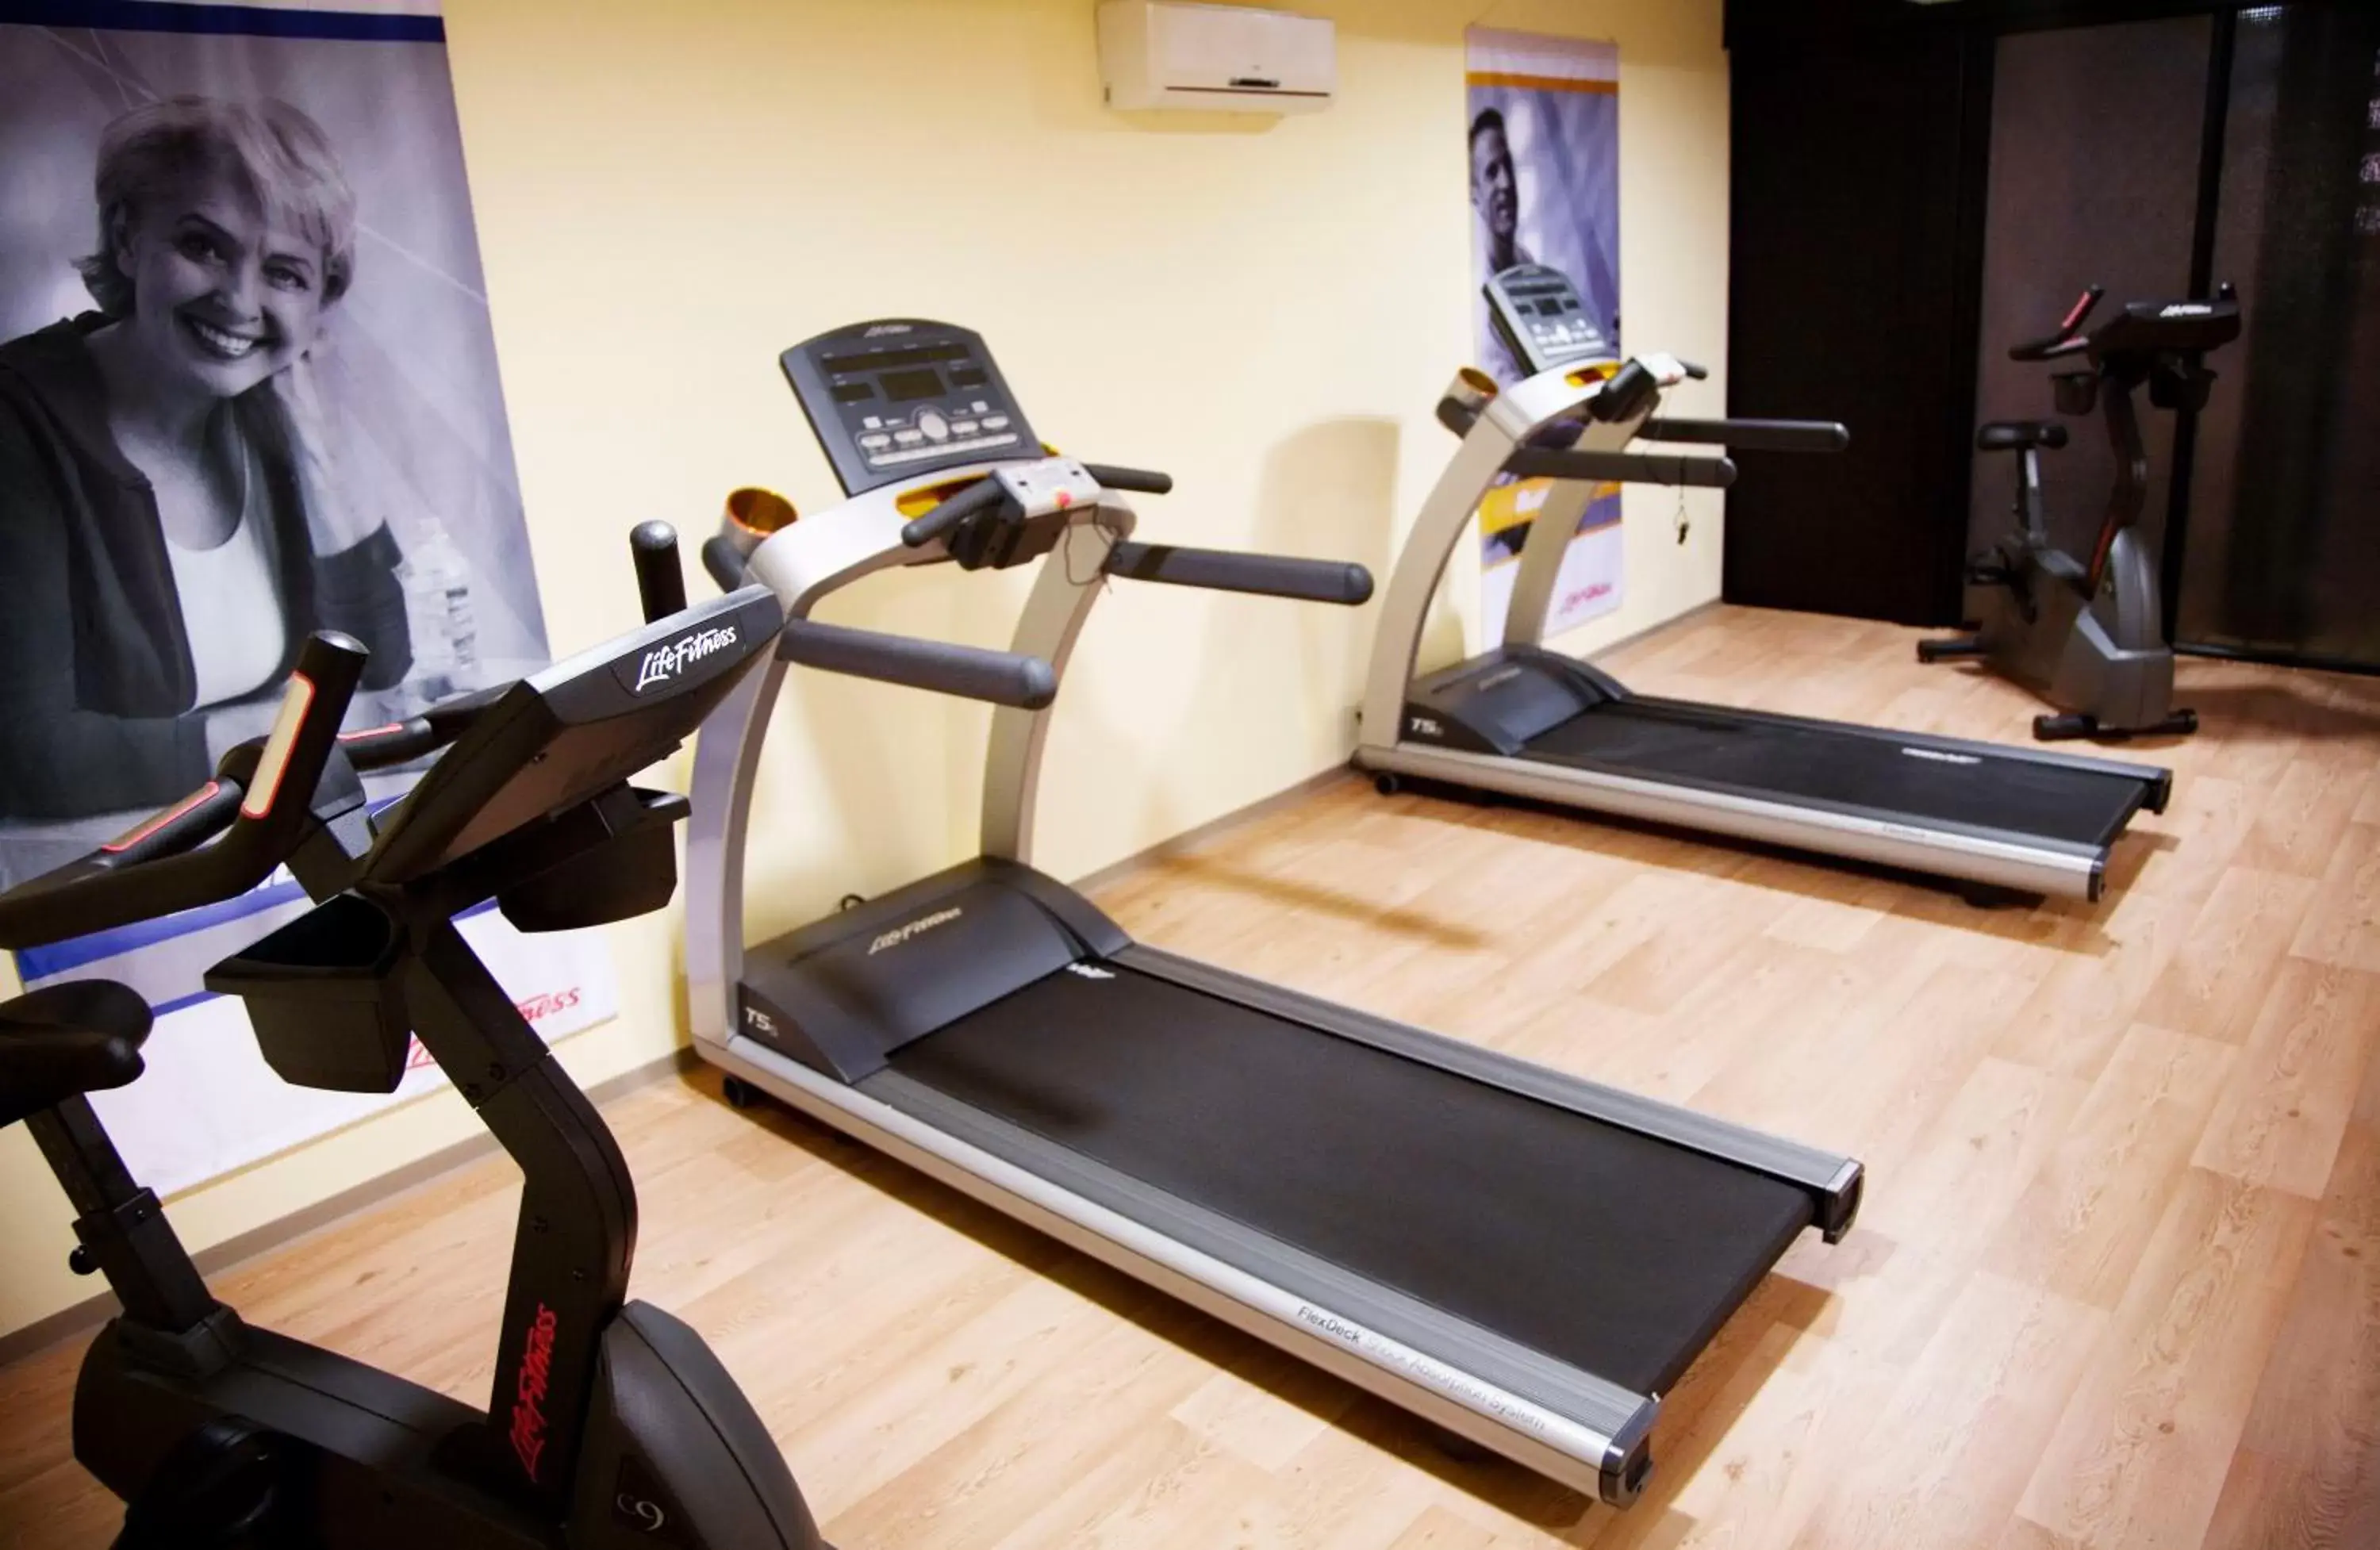 Fitness centre/facilities, Fitness Center/Facilities in Bilderberg Hotel De Bovenste Molen